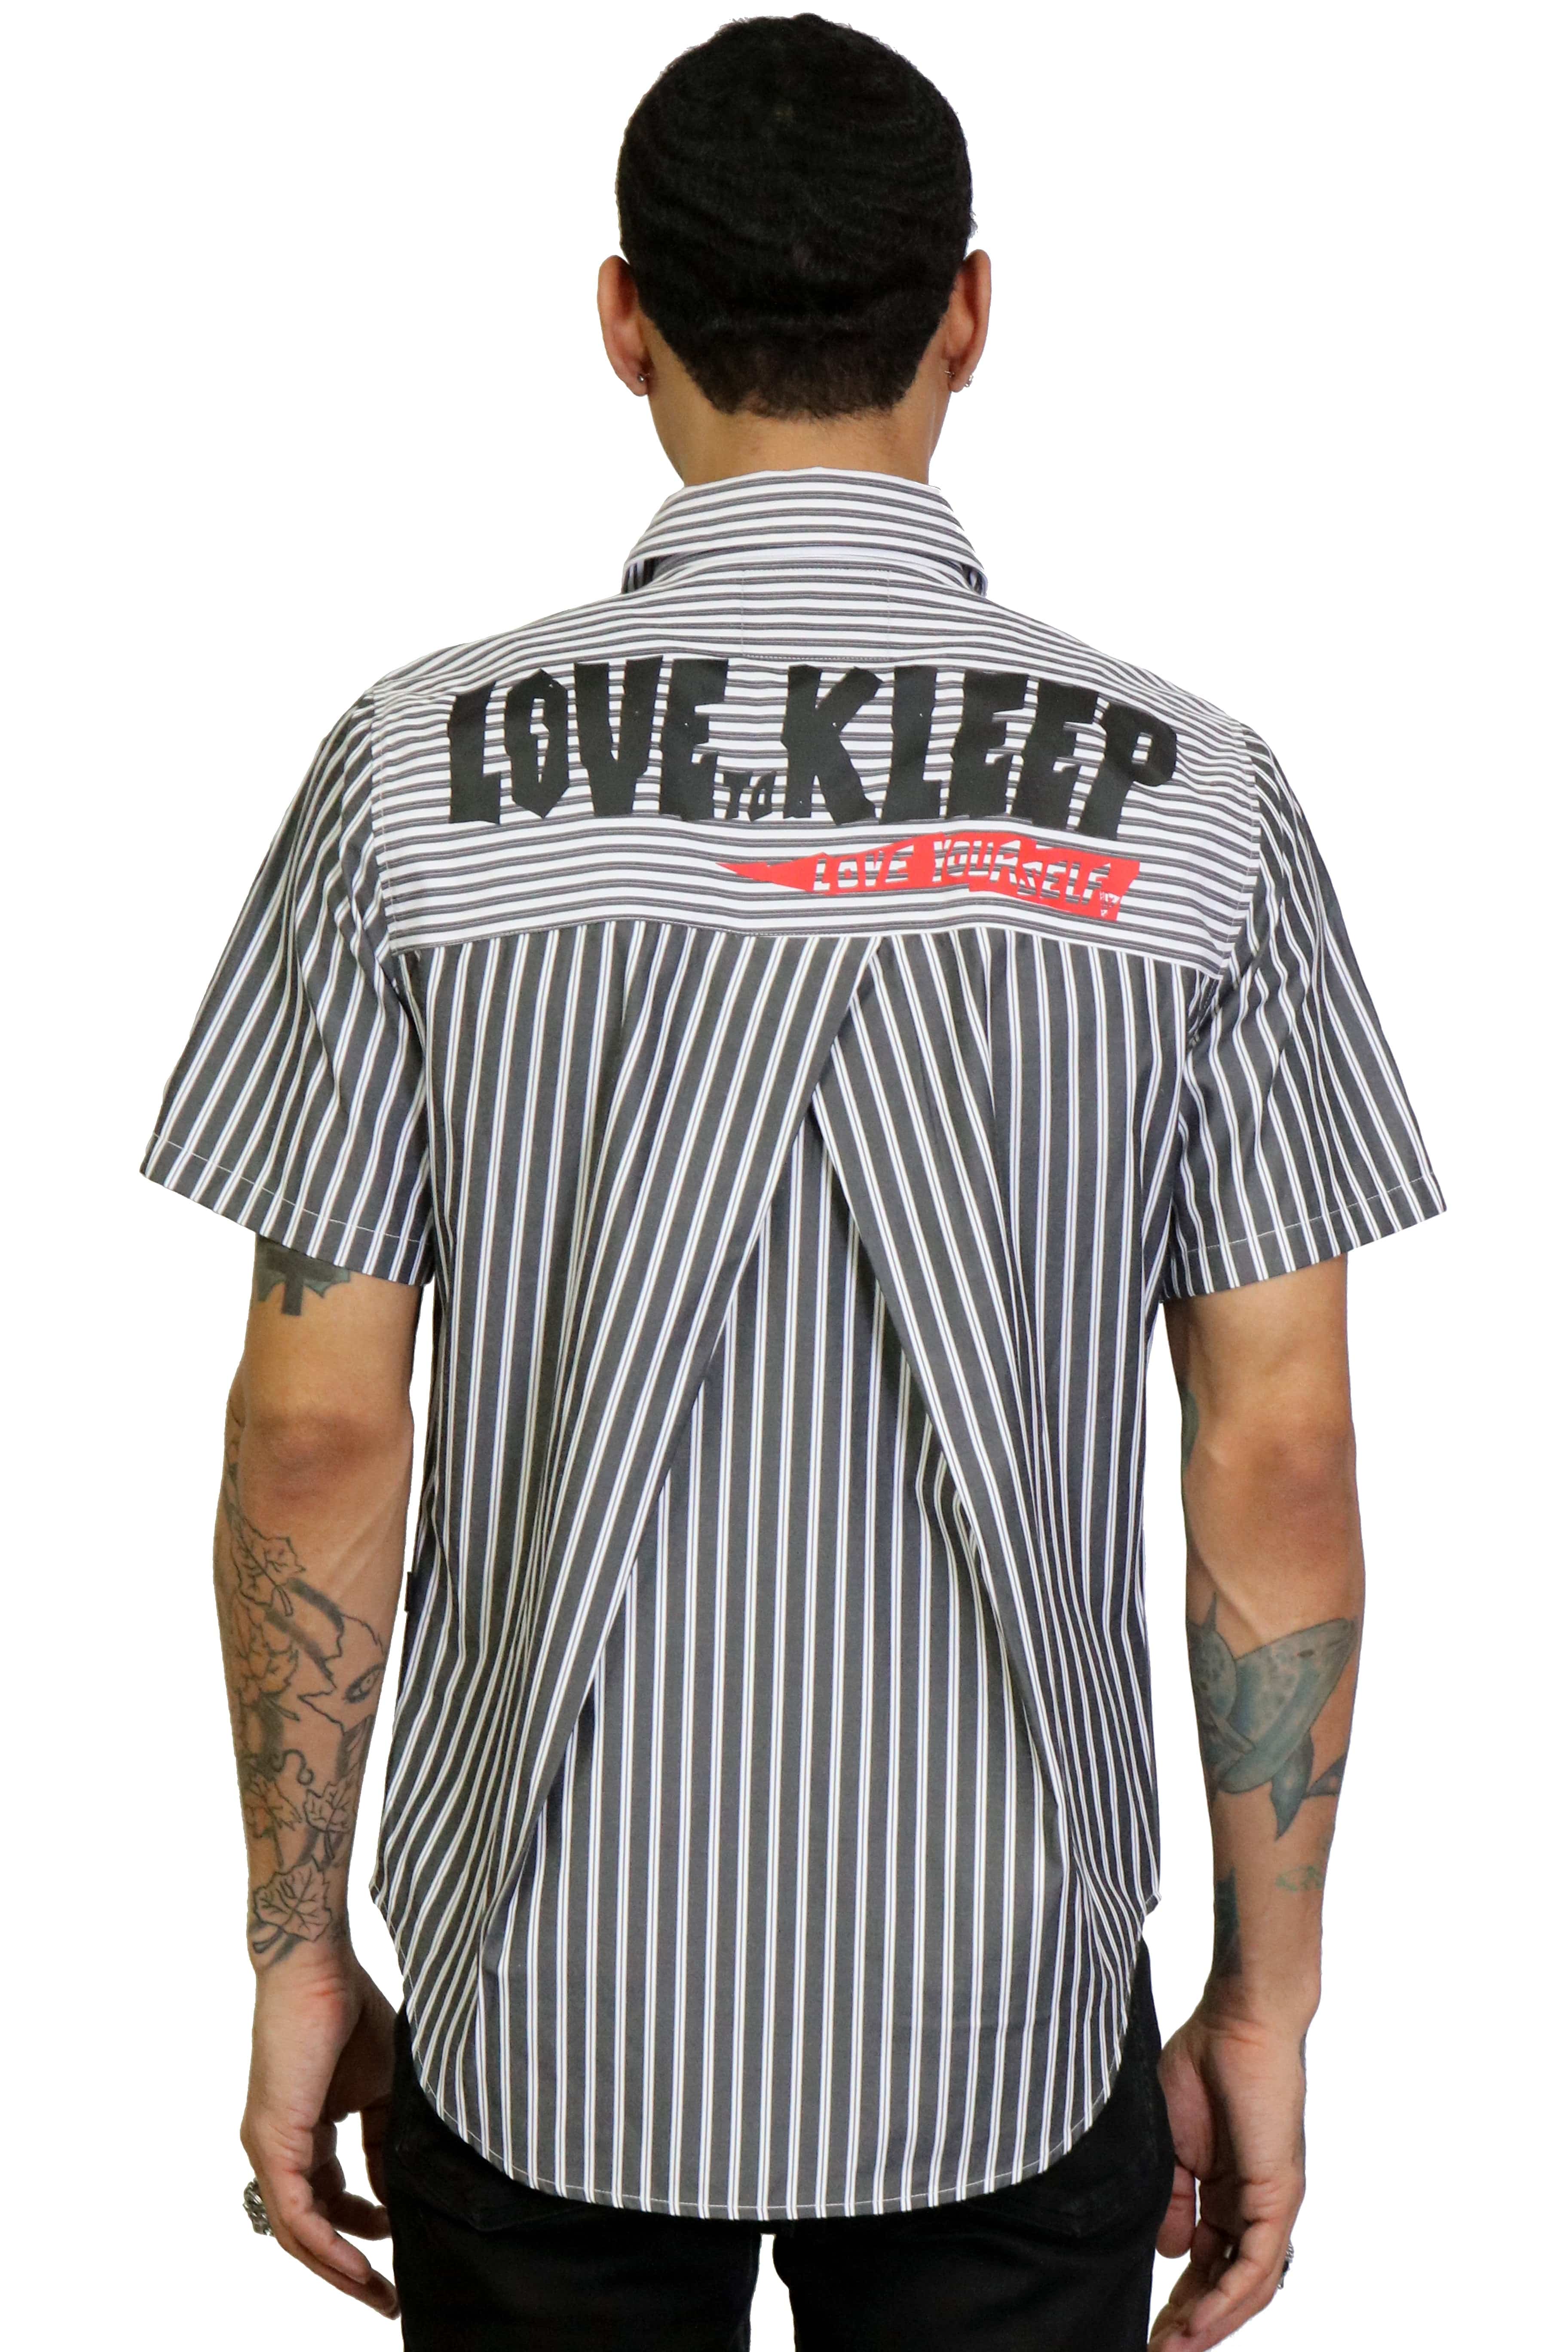 KLEEP Men's Shirt COS Men's premium shortsleeve buttondown shirt